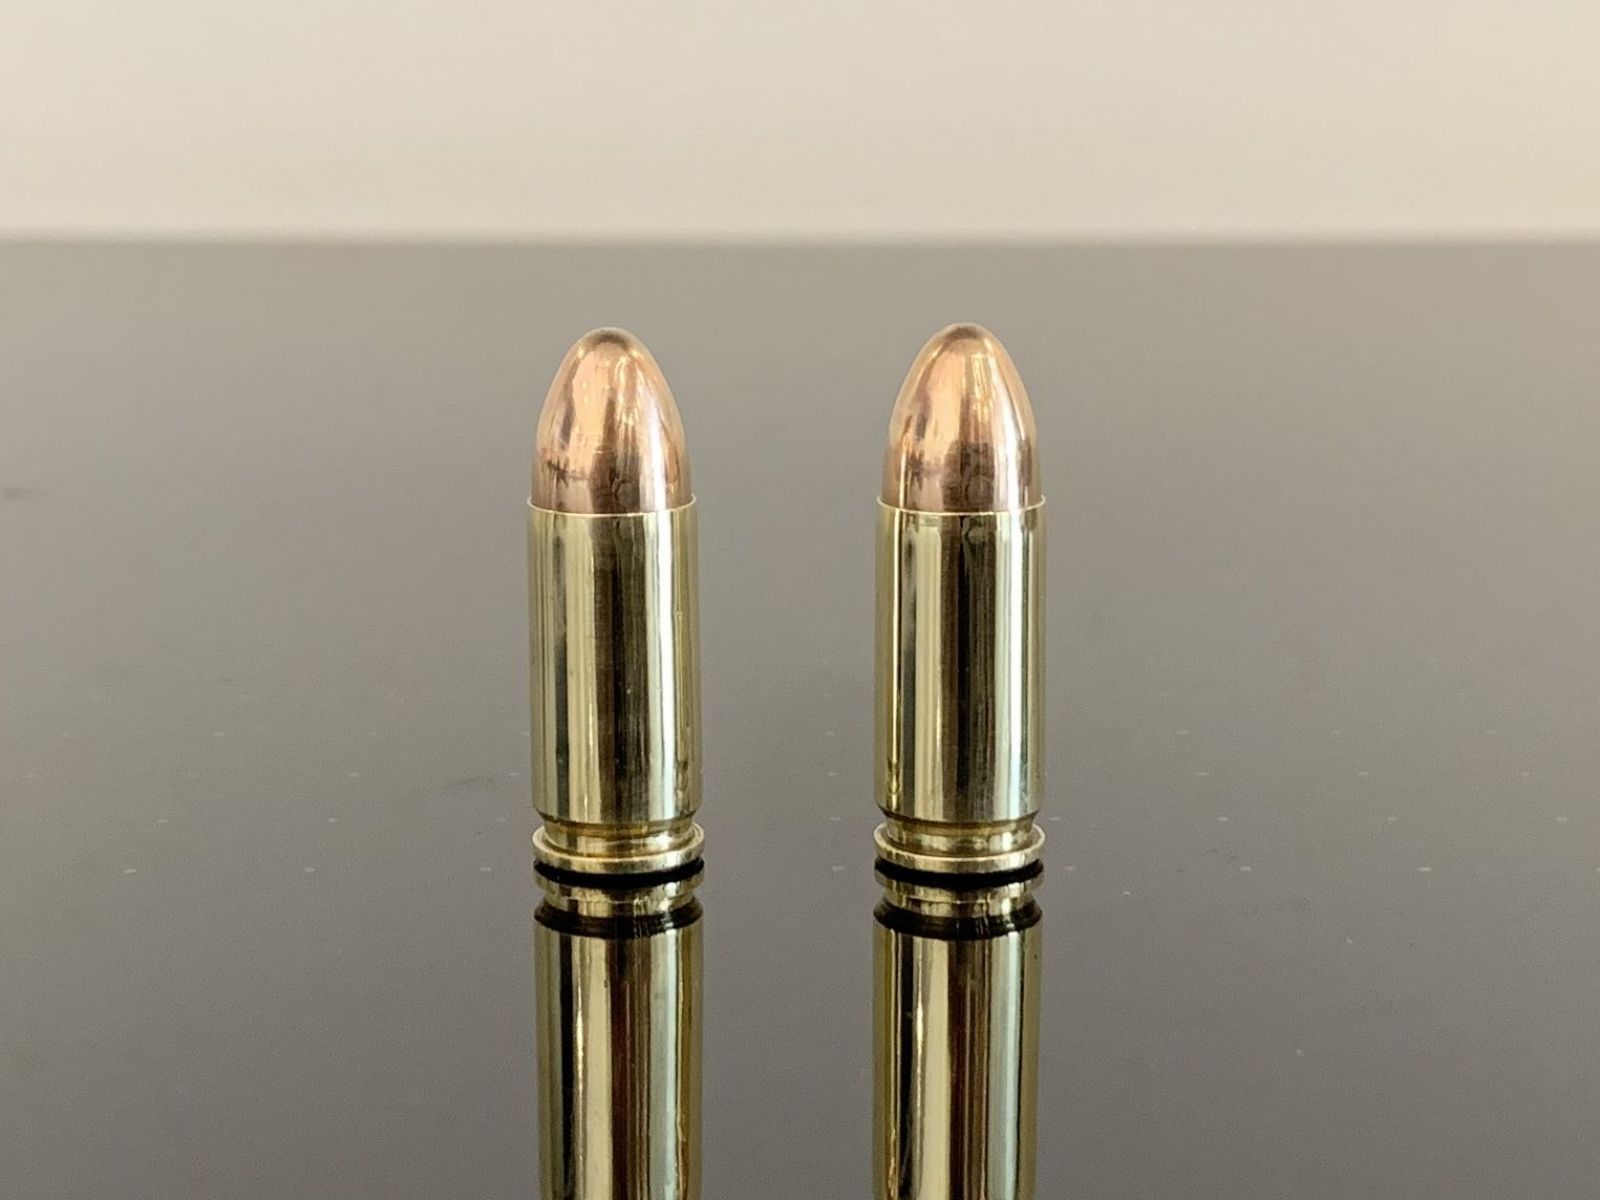 9 × 21 мм imi. 9 Мм пуля с черным наконечником. Патрон 25 ACP Размеры.